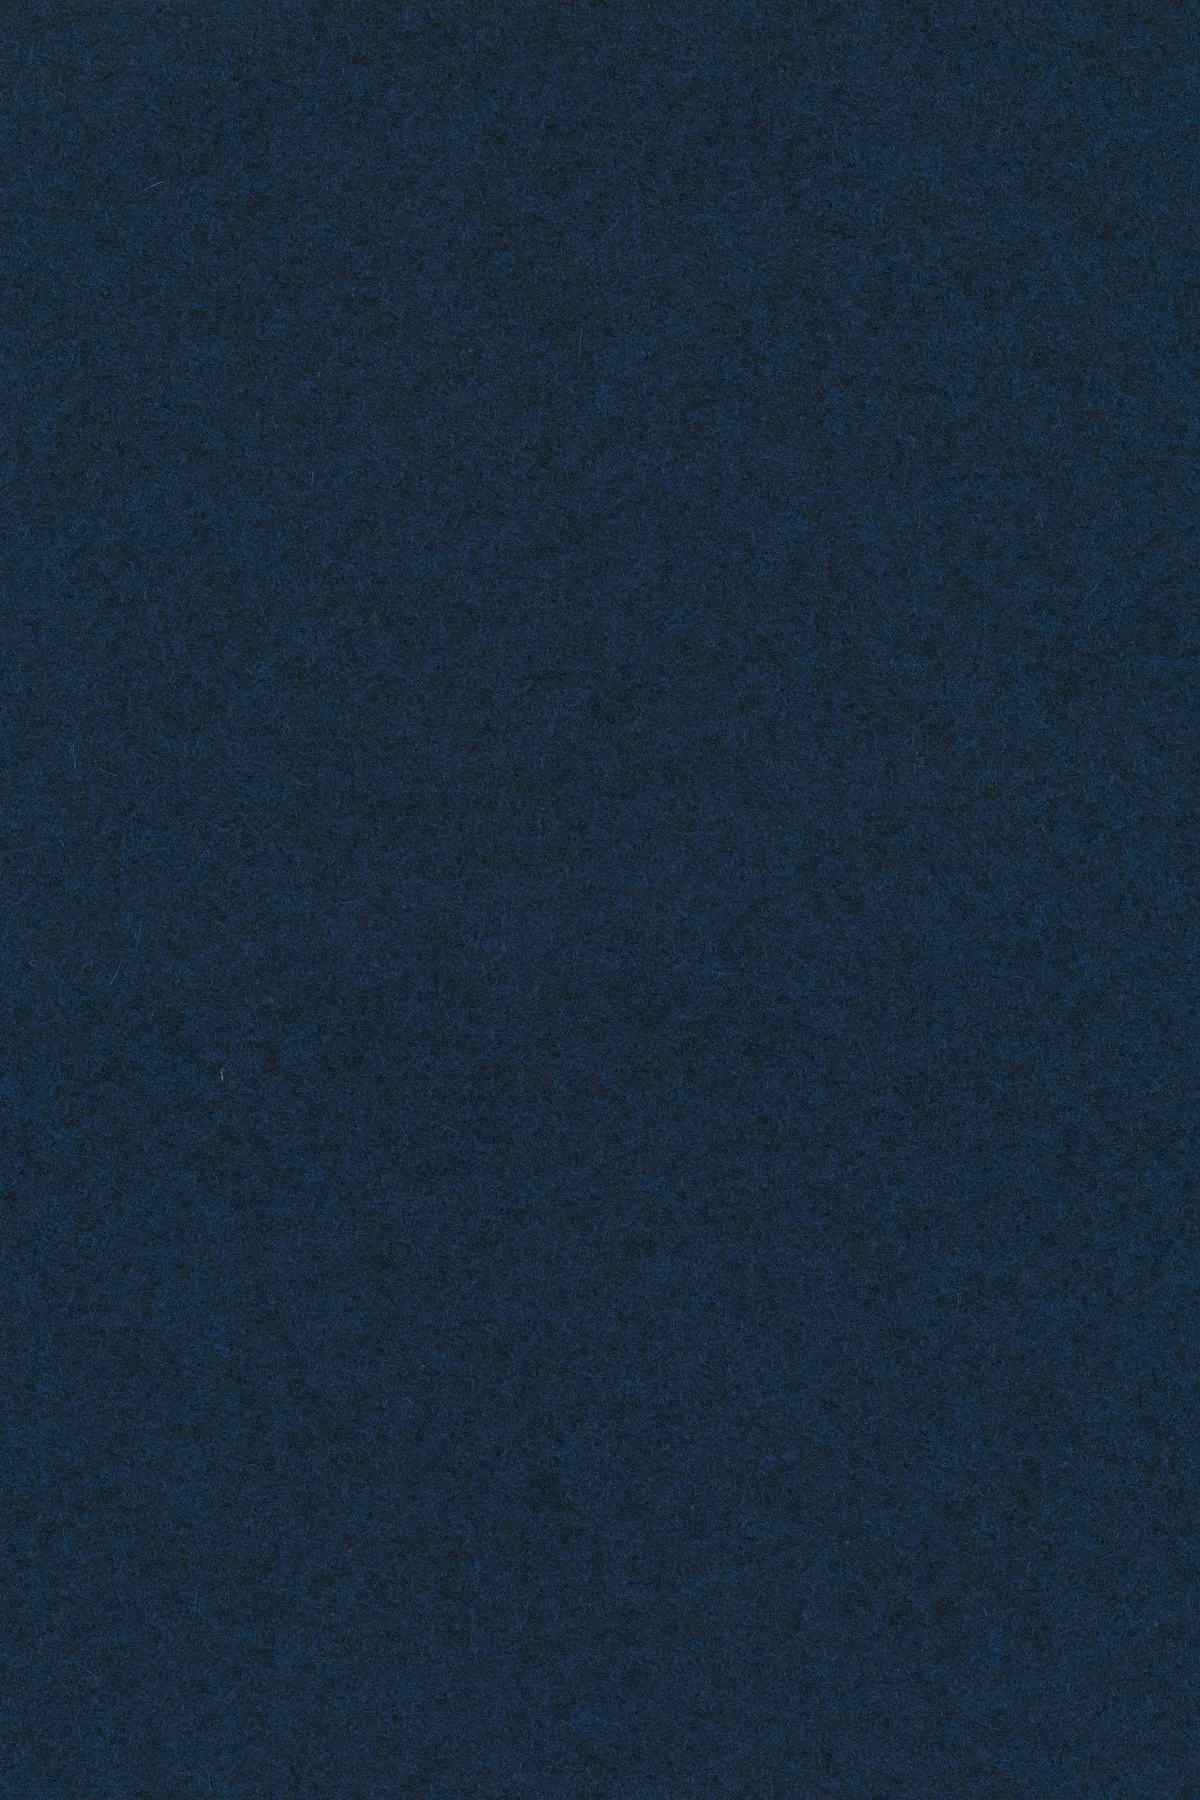 Fabric sample Divina Melange 3 777 blue